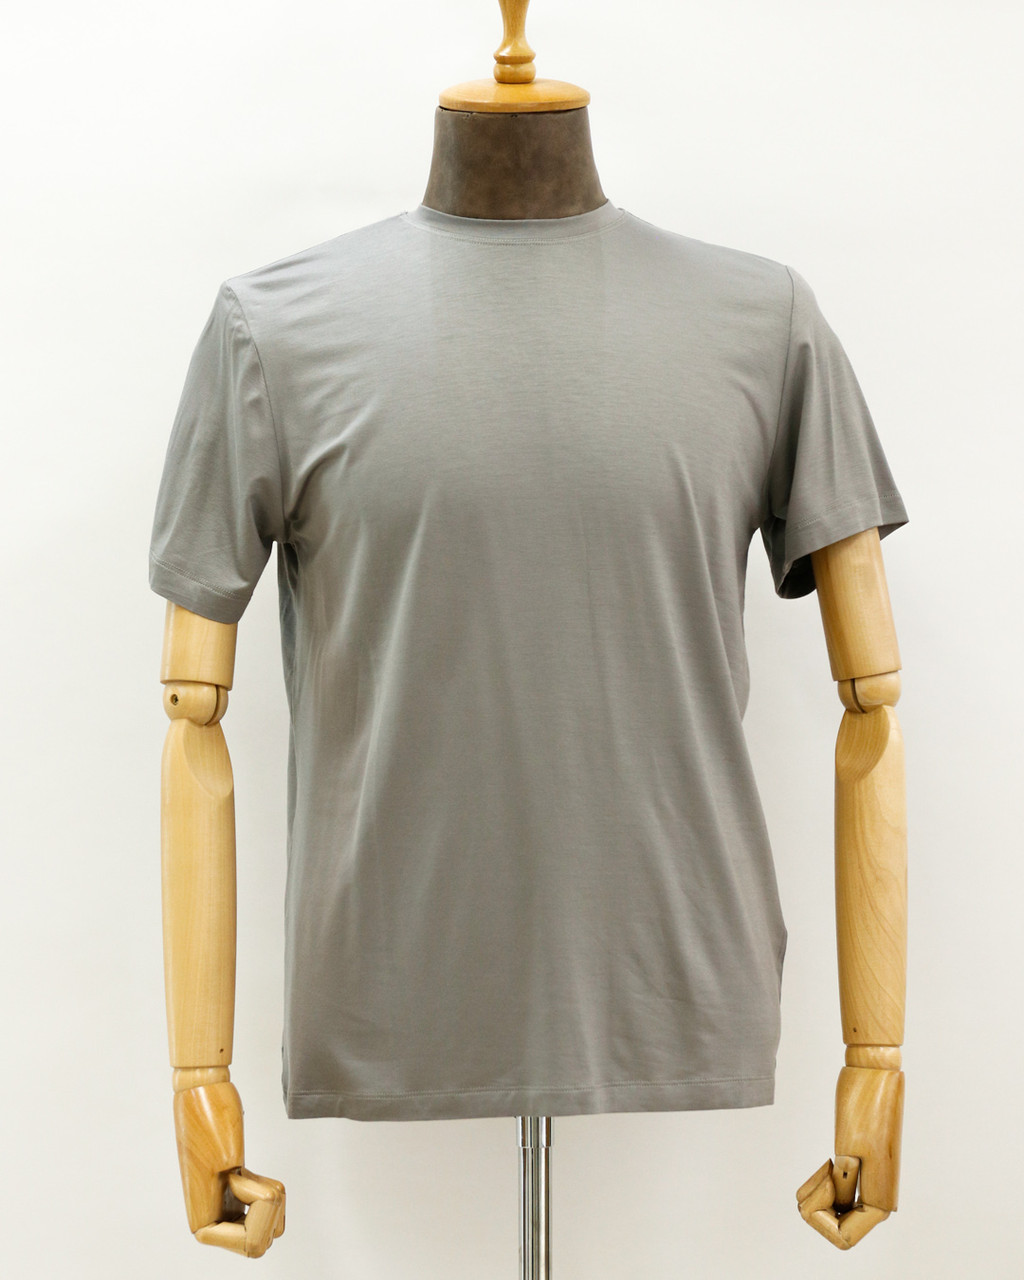 Мужская футболка «UM&H 16959483» серый, фото 1